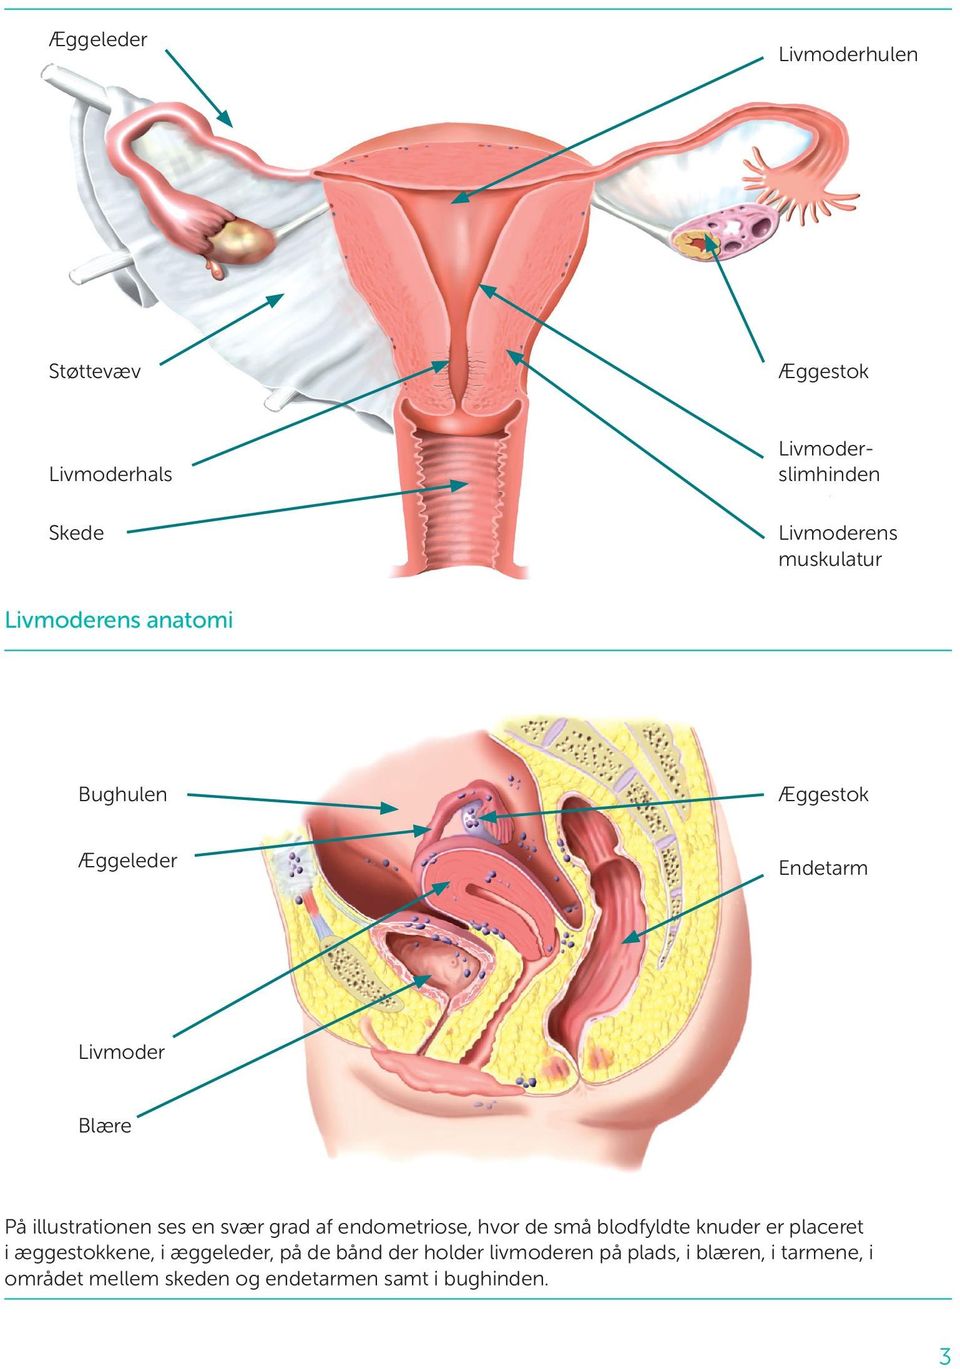 grad af endometriose, hvor de små blodfyldte knuder er placeret i ægge stokkene, i æggeleder, på de bånd